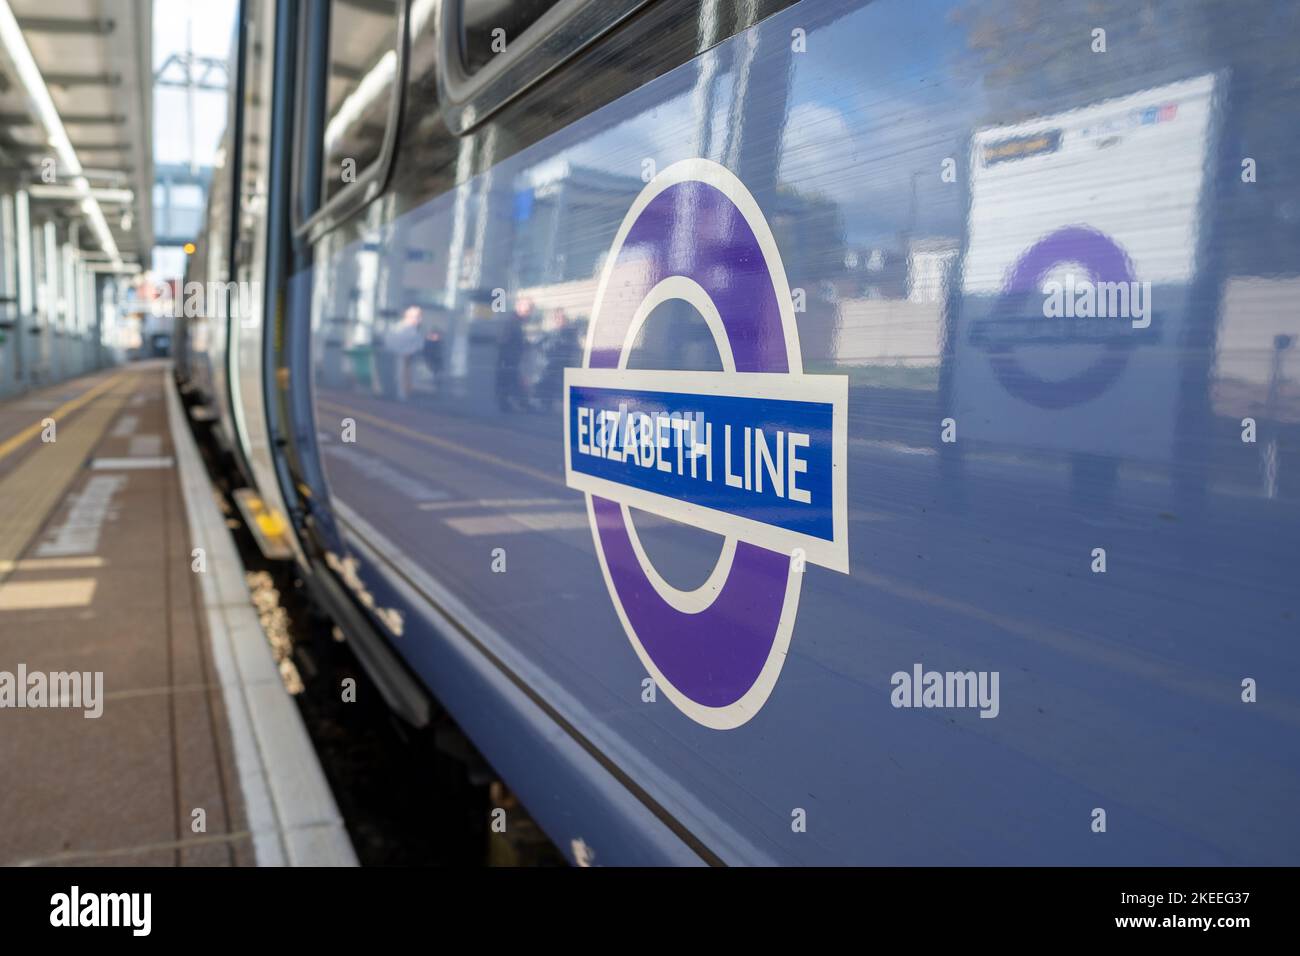 Londra - Novembre 2022: Logo del treno Elizabeth Line sul treno in piedi sul binario Foto Stock